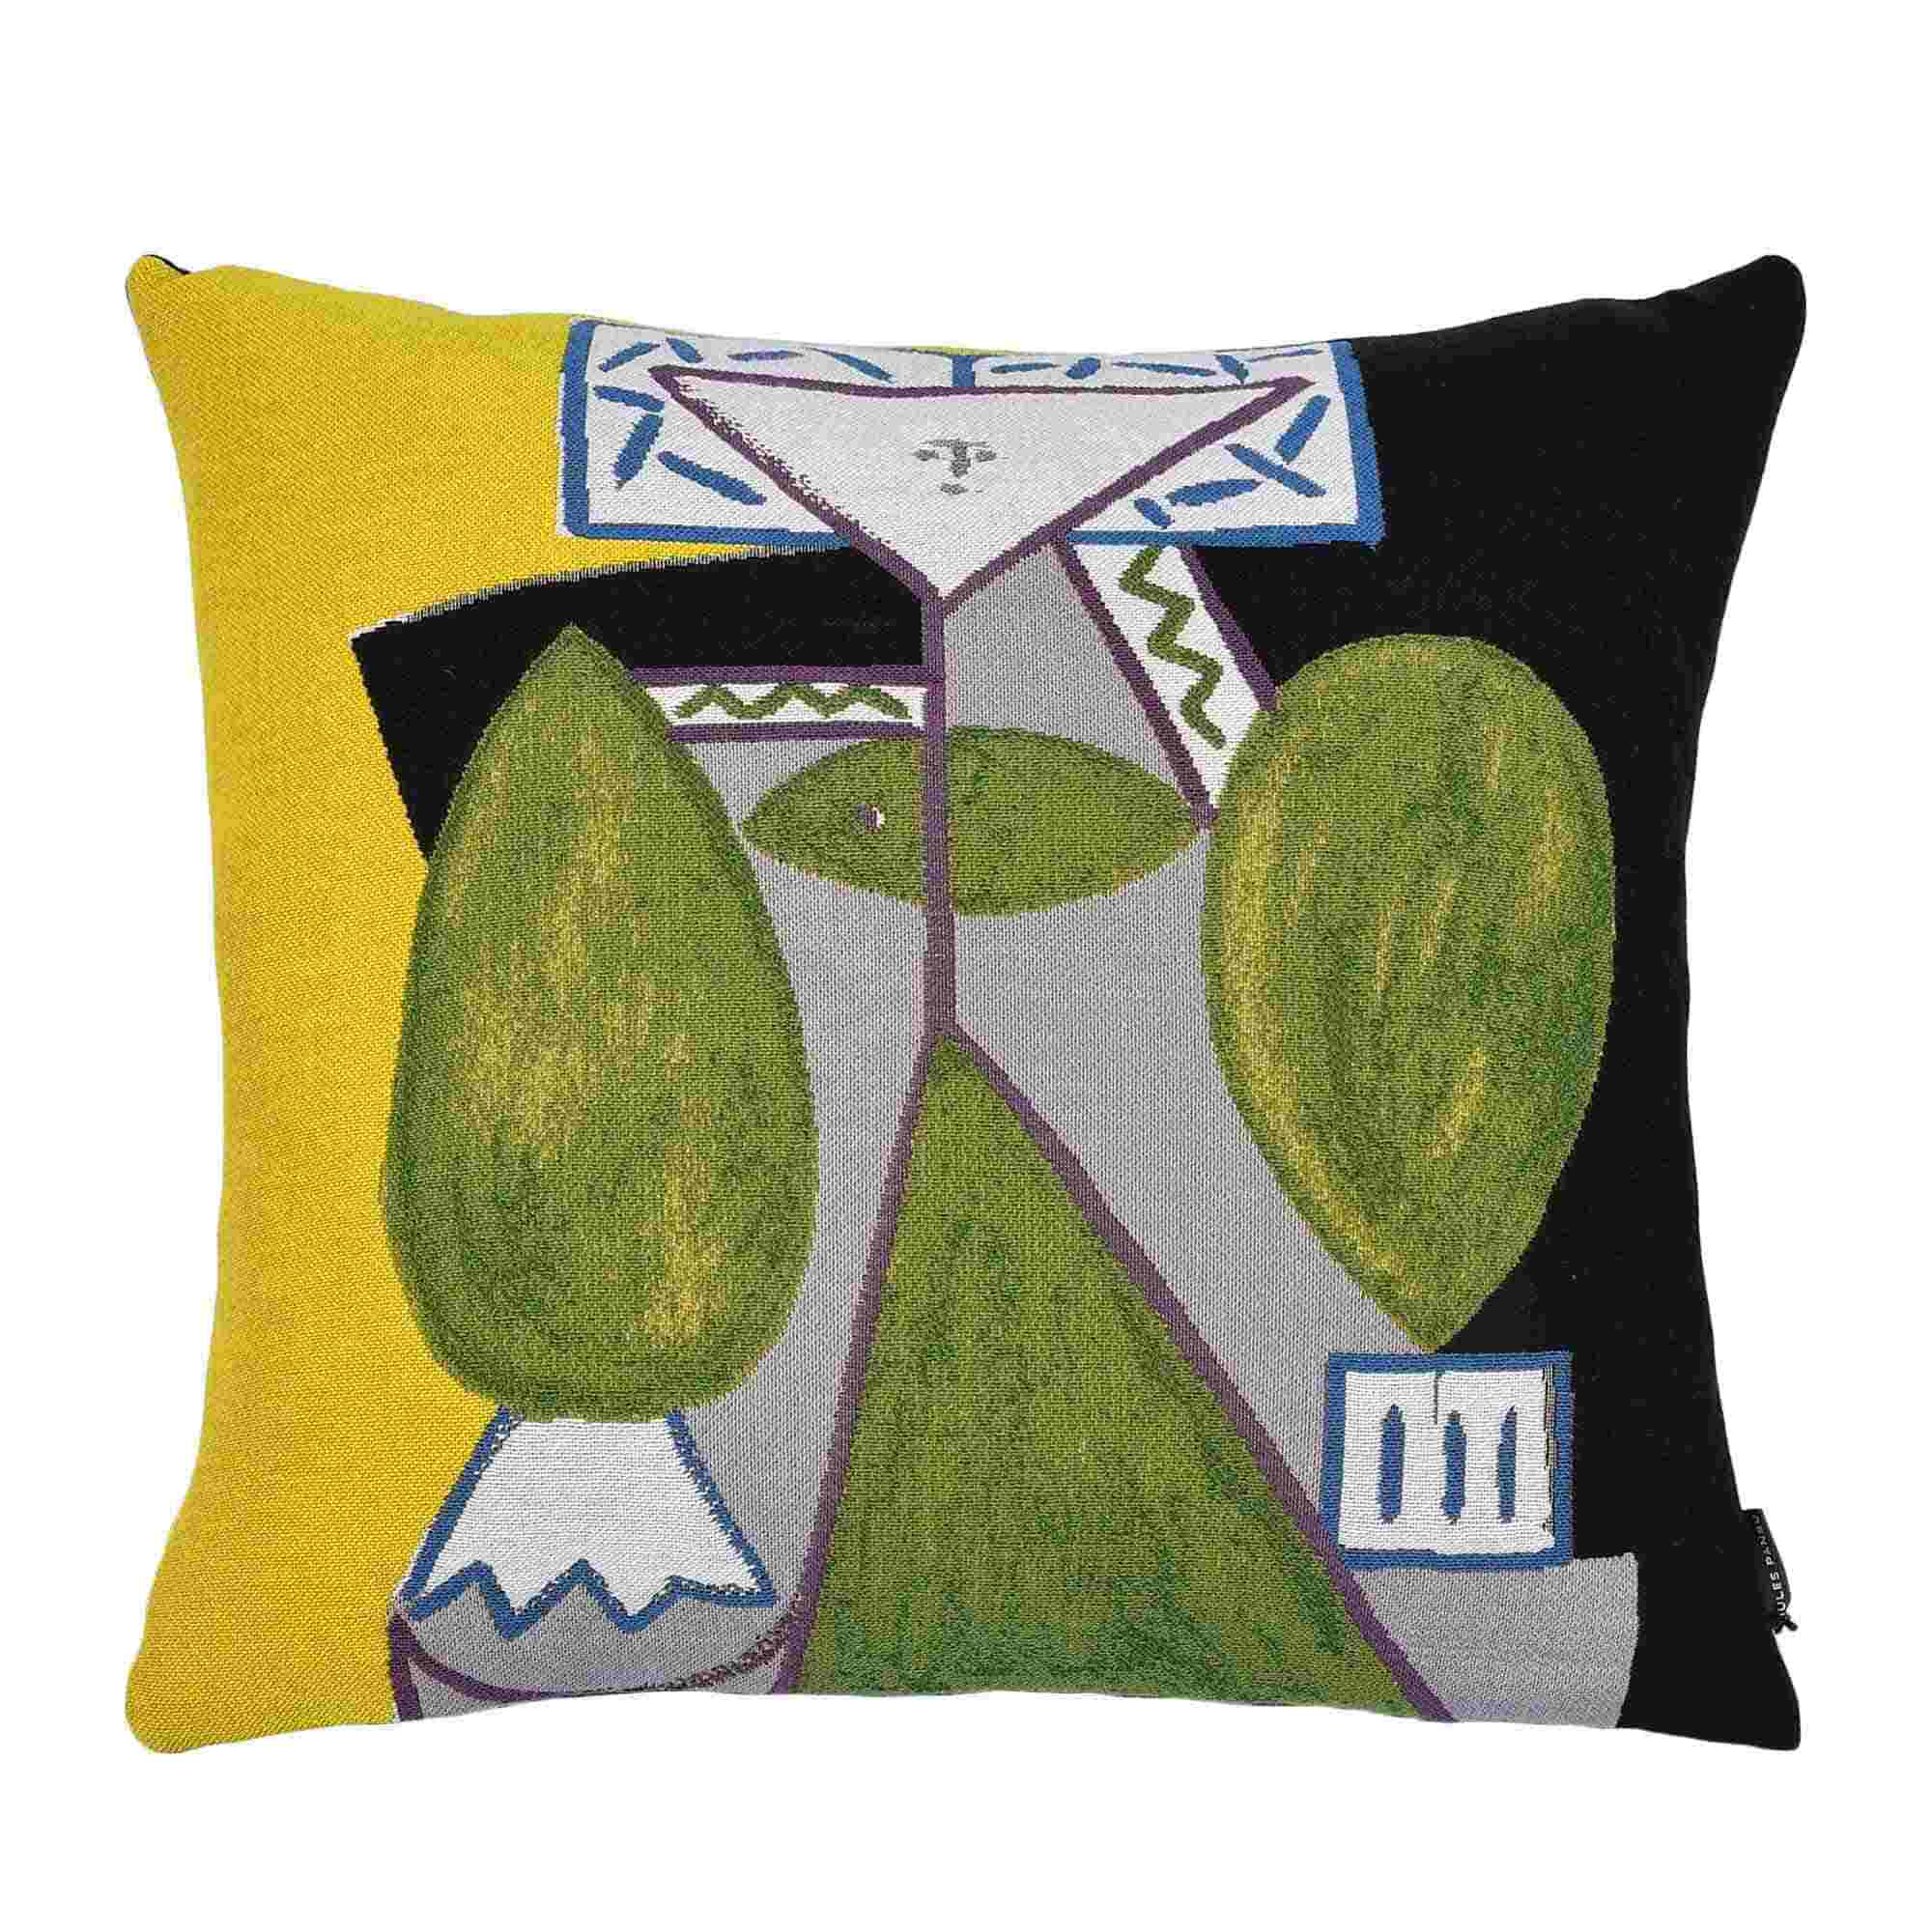 Femme En Vert Et Mauve Cushion Cover image 1